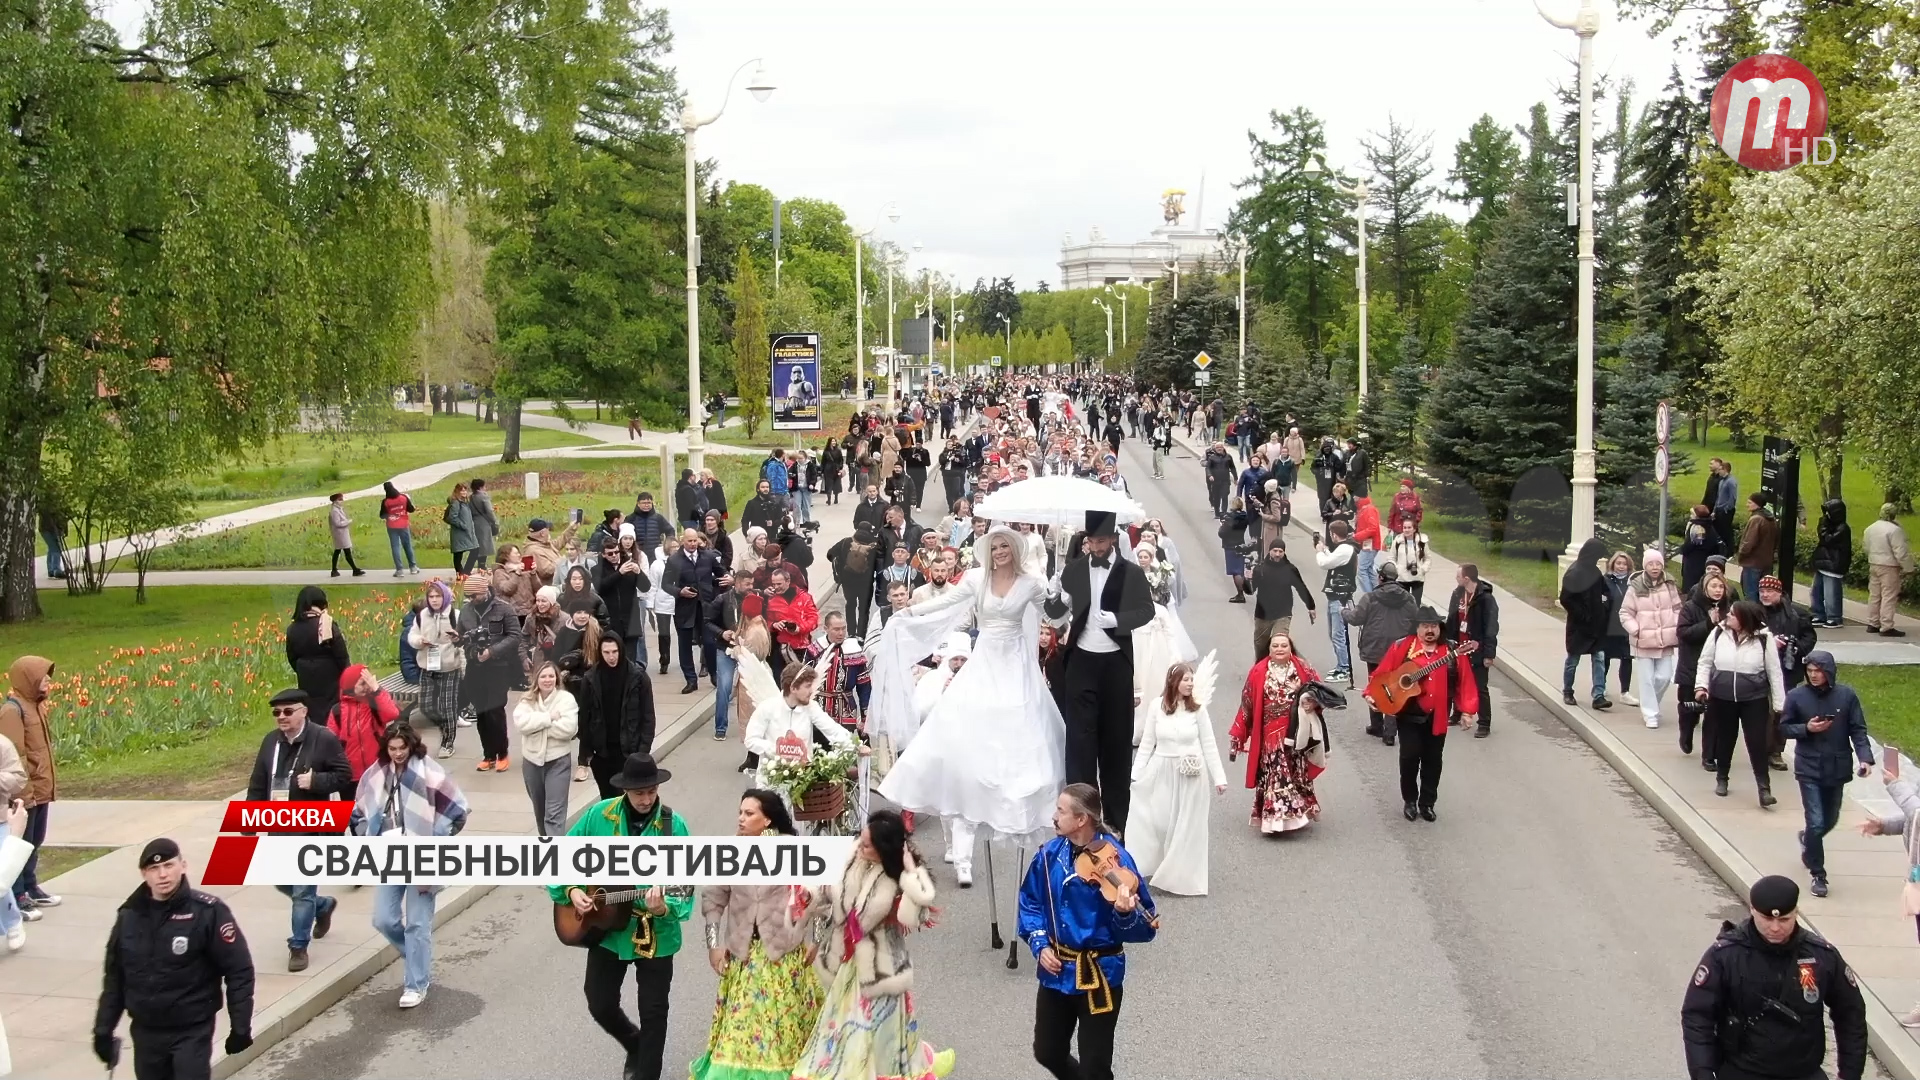 Горько! Бурятия на свадебном фестивале в Москве